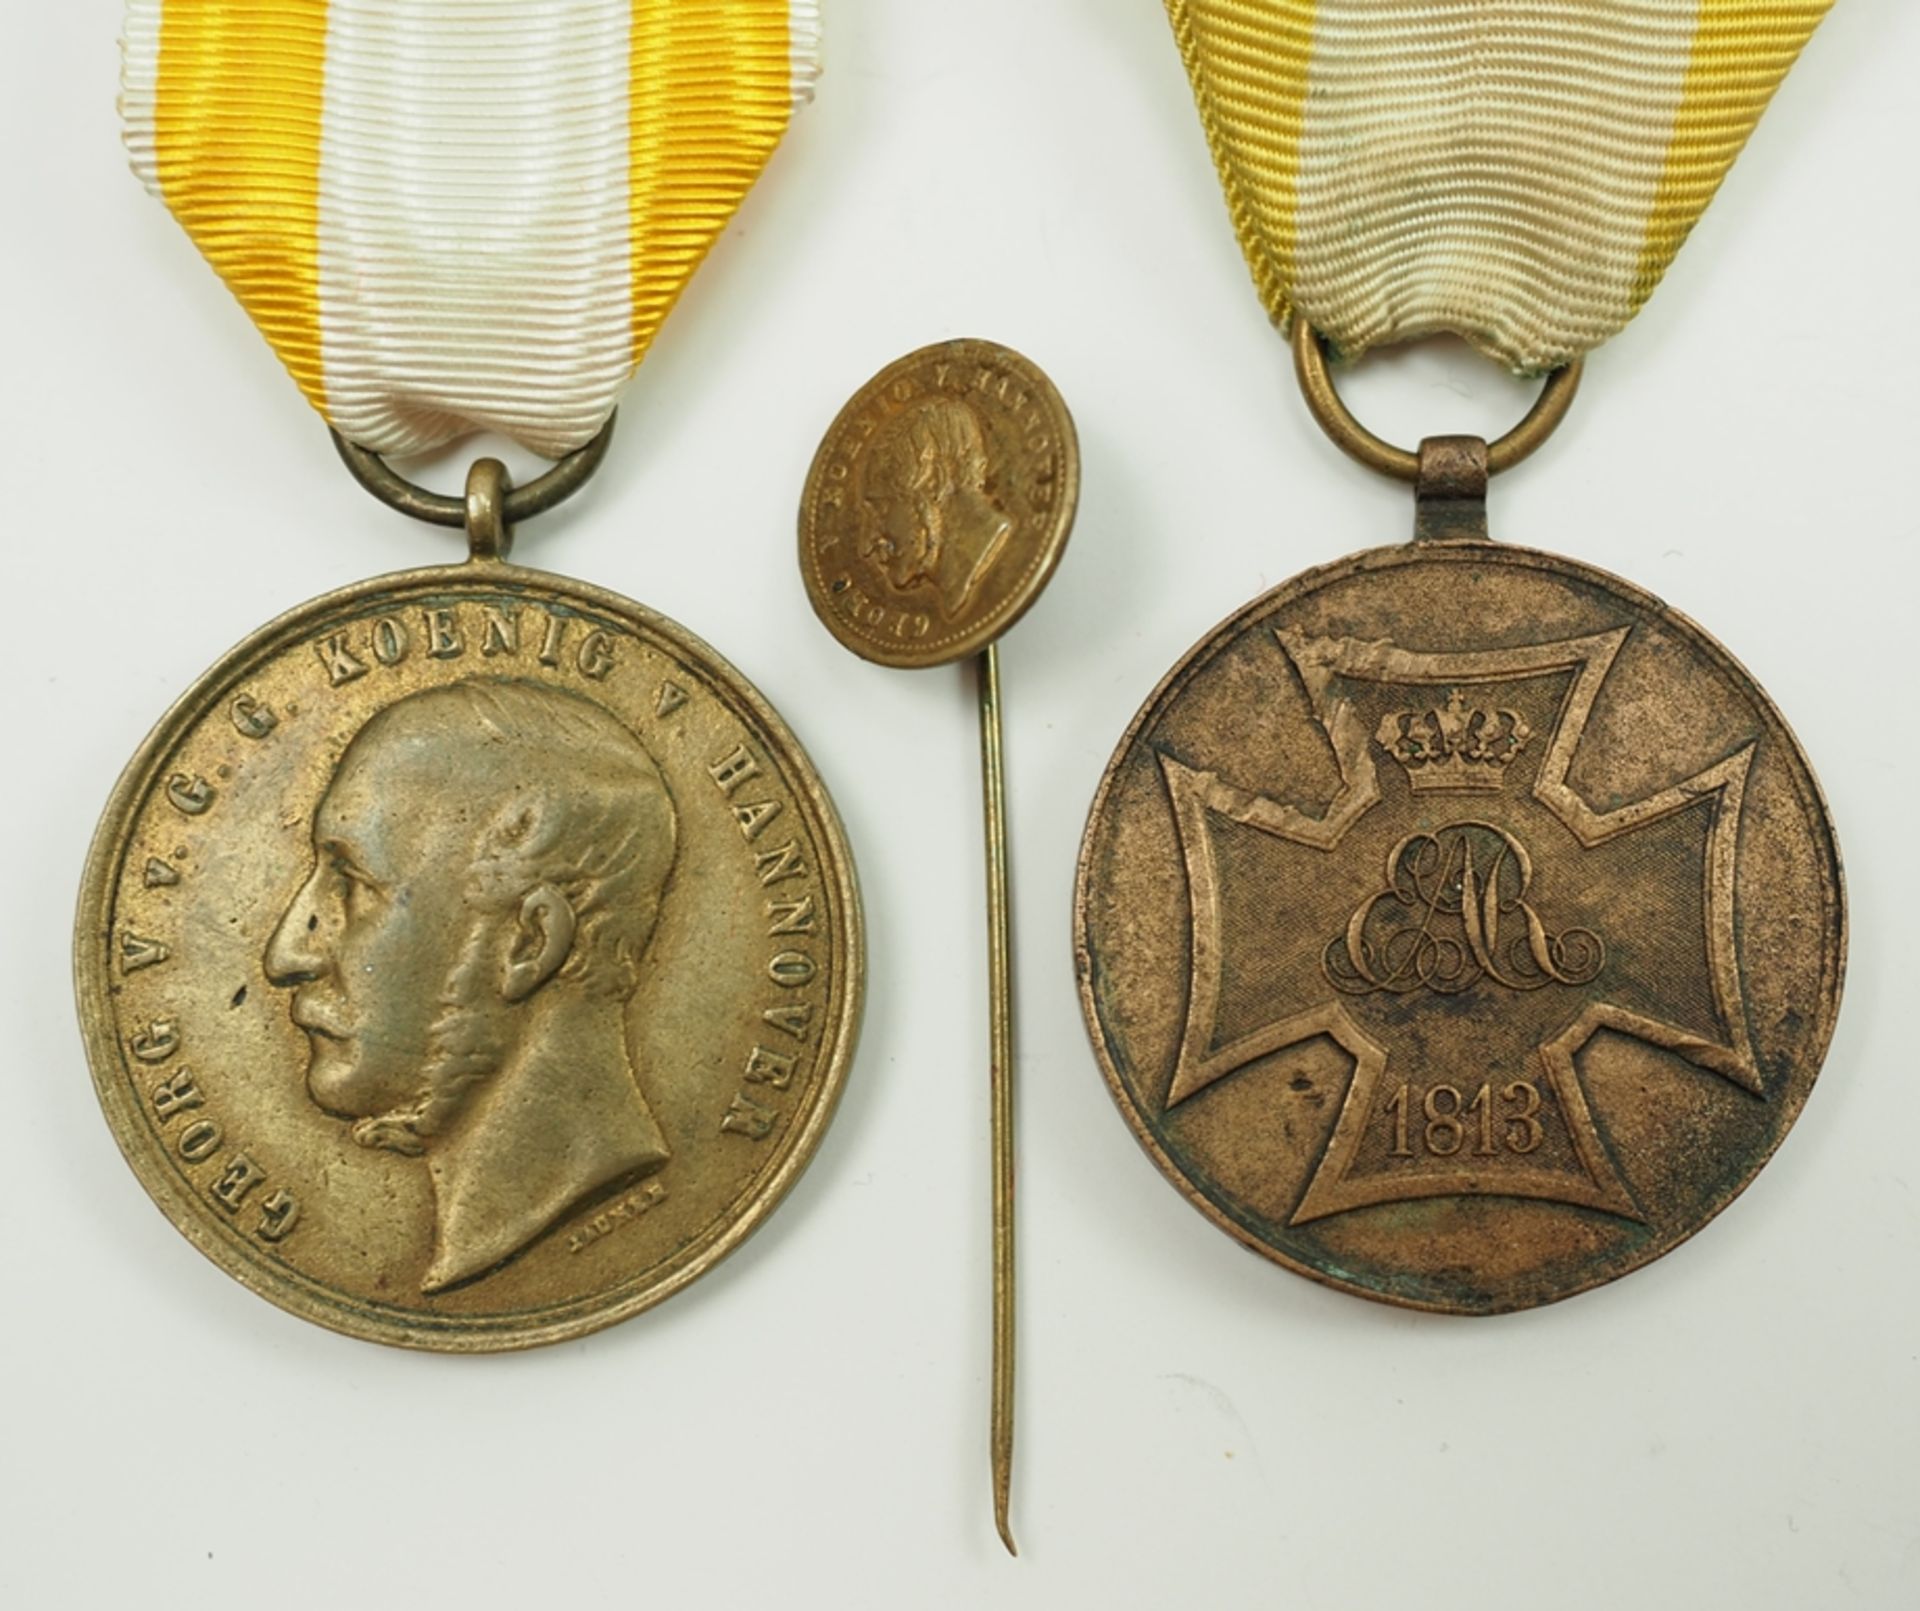 Hannover: Kriegsdenkmünze für die Freiwilligen von 1813 und Langensalza-Medaille.